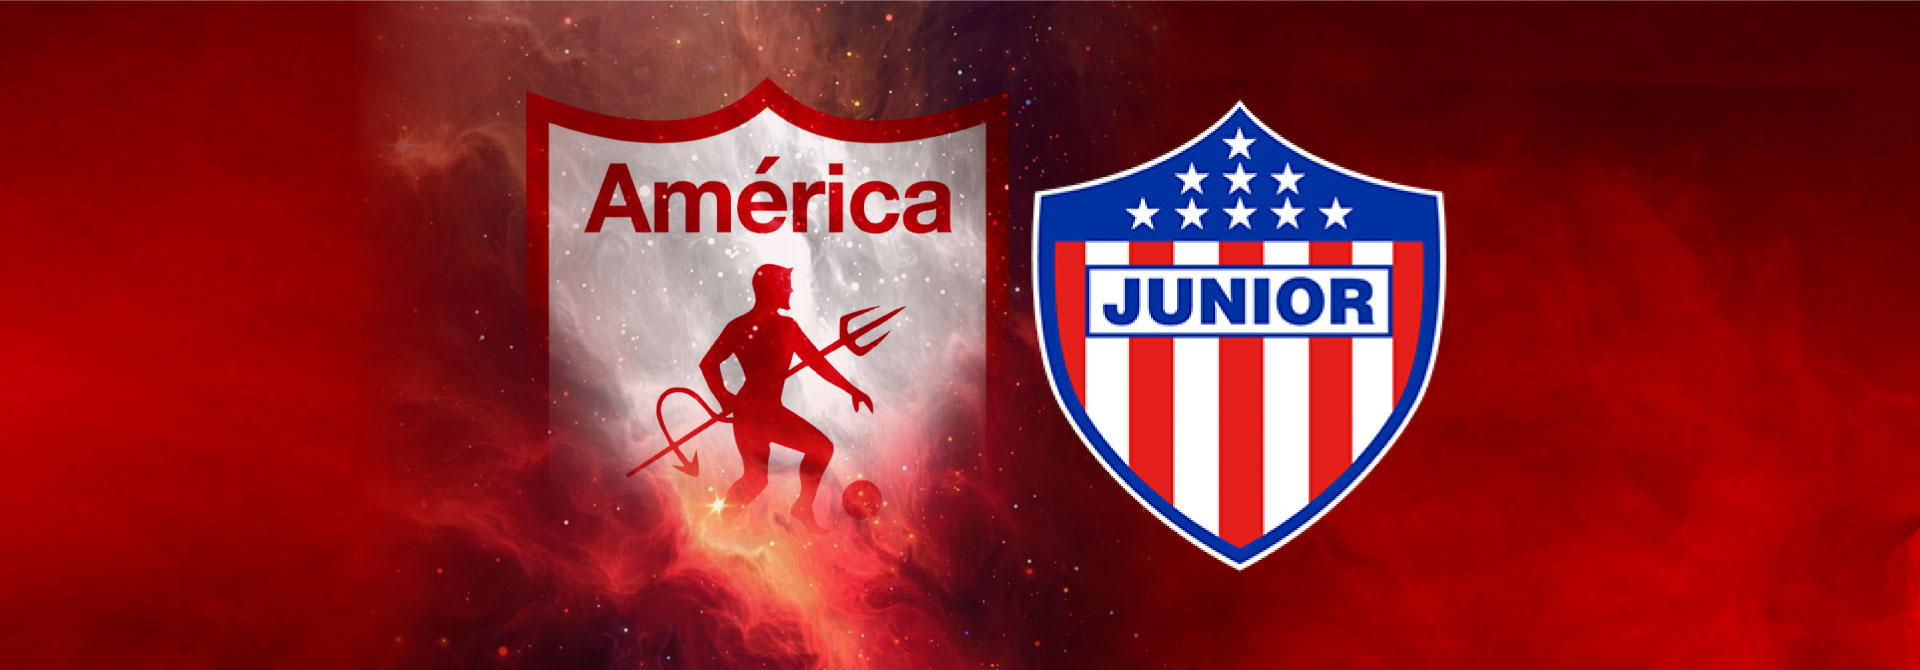 Final Liga Águila América Vs junior Club Campestre de Cali